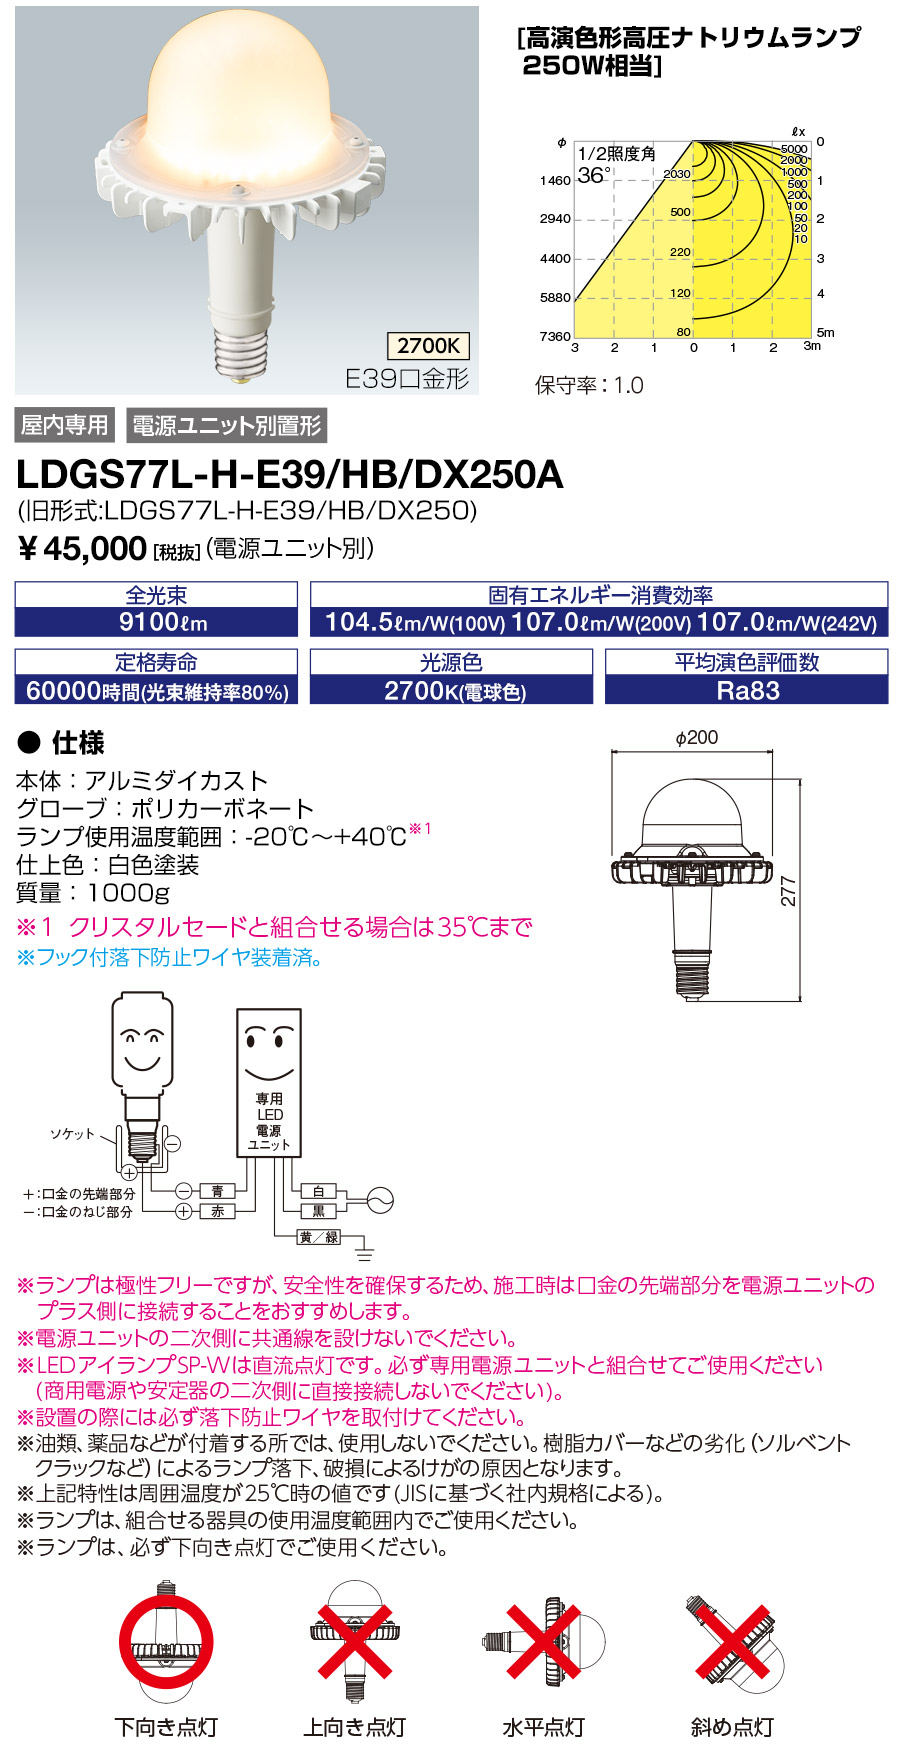 LDGS77L-H-E39-HB-DX250A